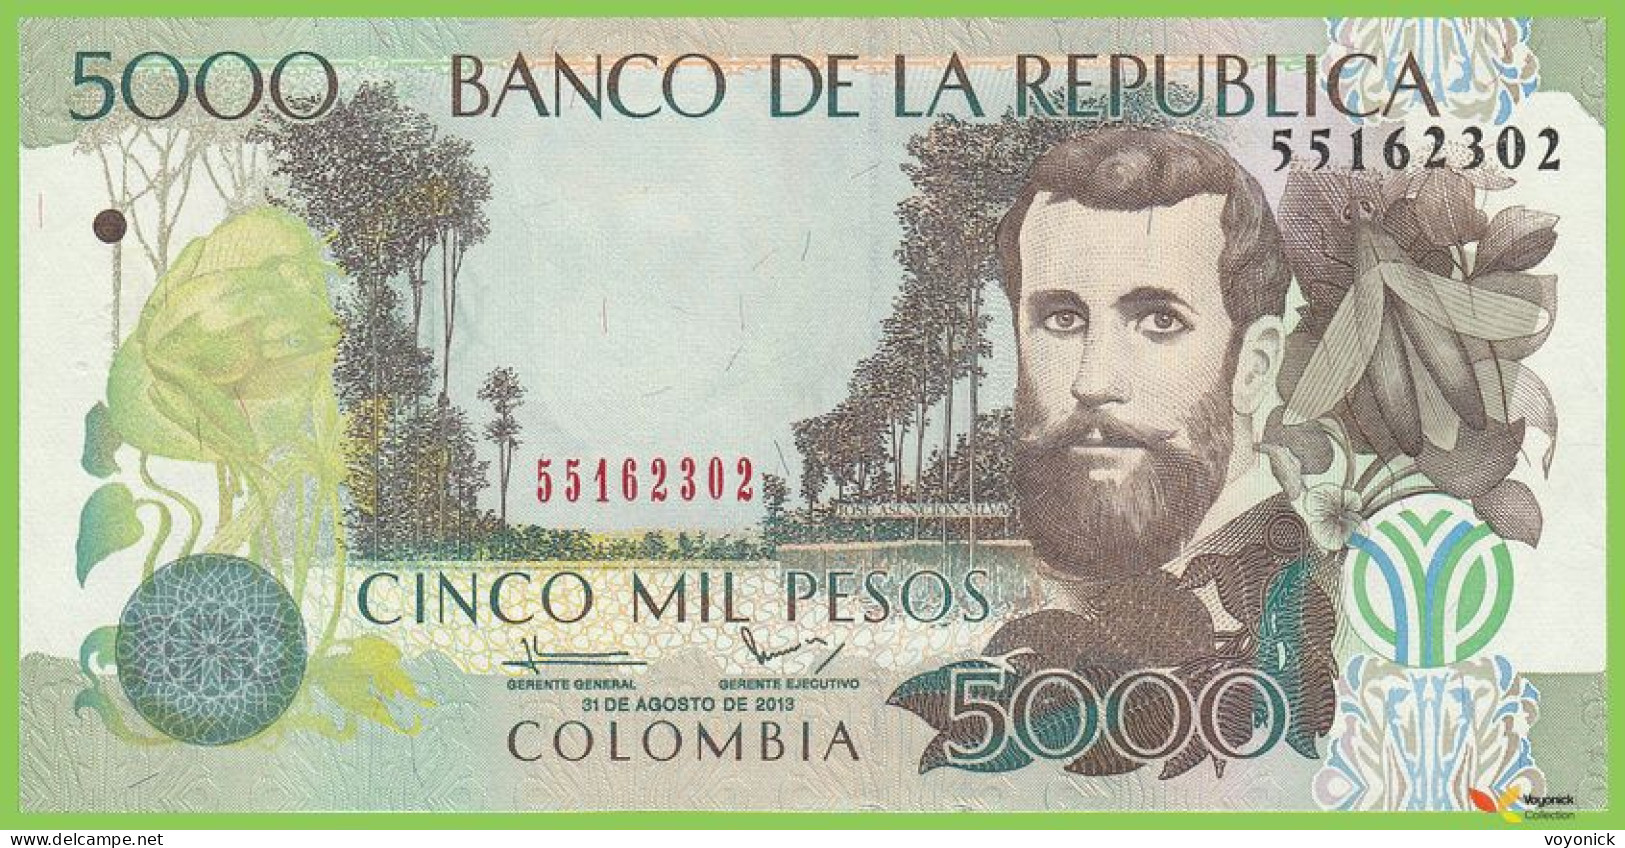 Voyo COLOMBIA 5000 Pesos 2013(2014) P452o B998r UNC - Colombie